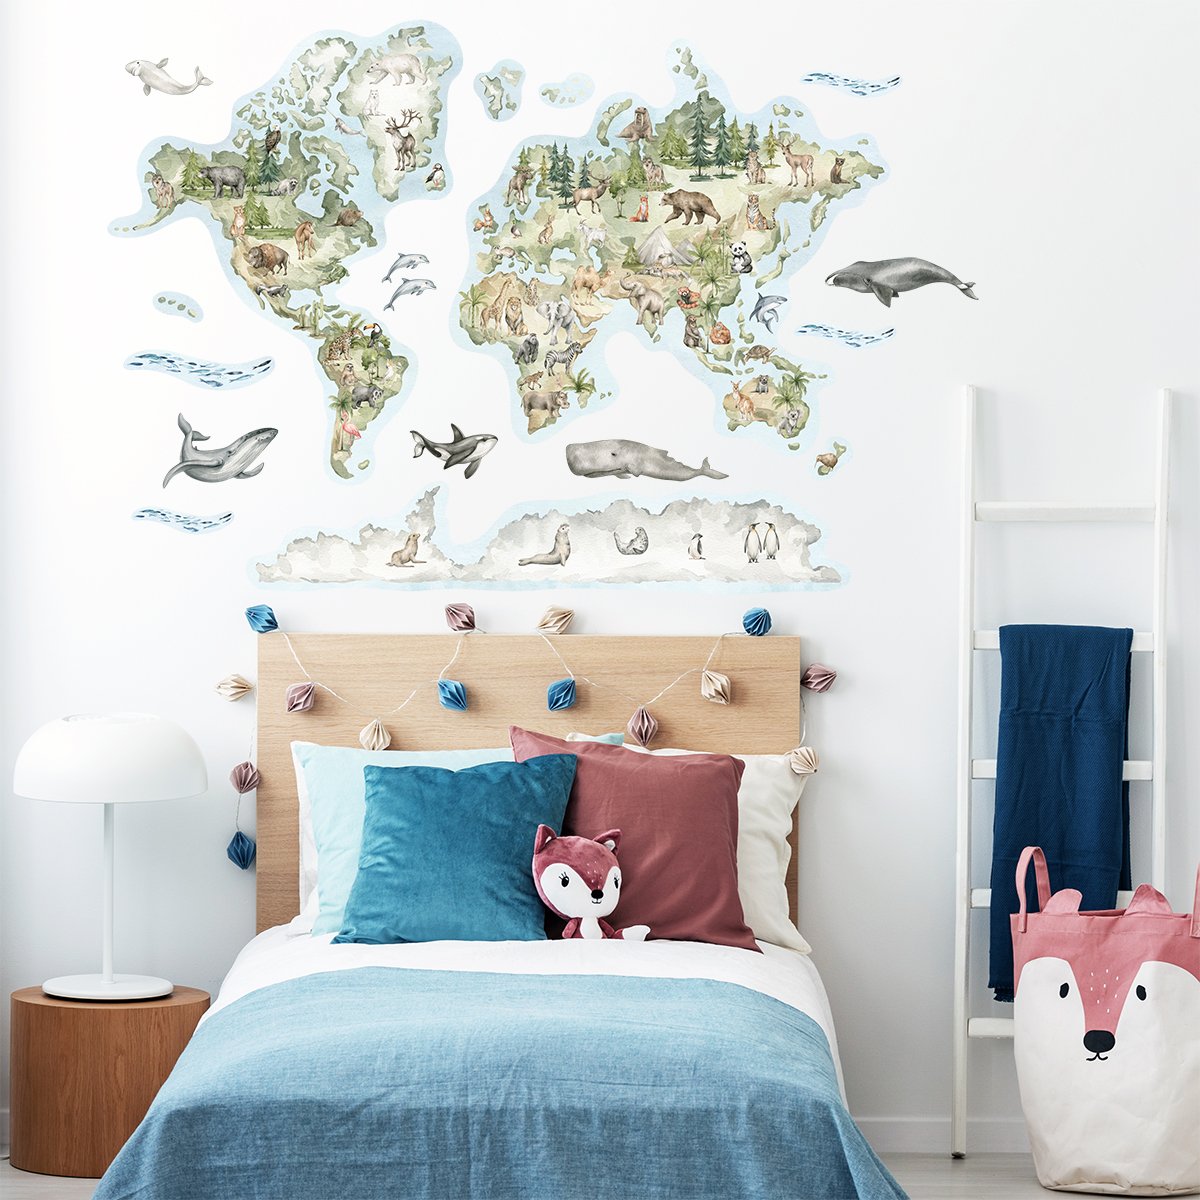 Naklejka dla dzieci mapa świata ze zwierzętami naklejona na ścianę nad biurkiem w pokoju dziecięcym